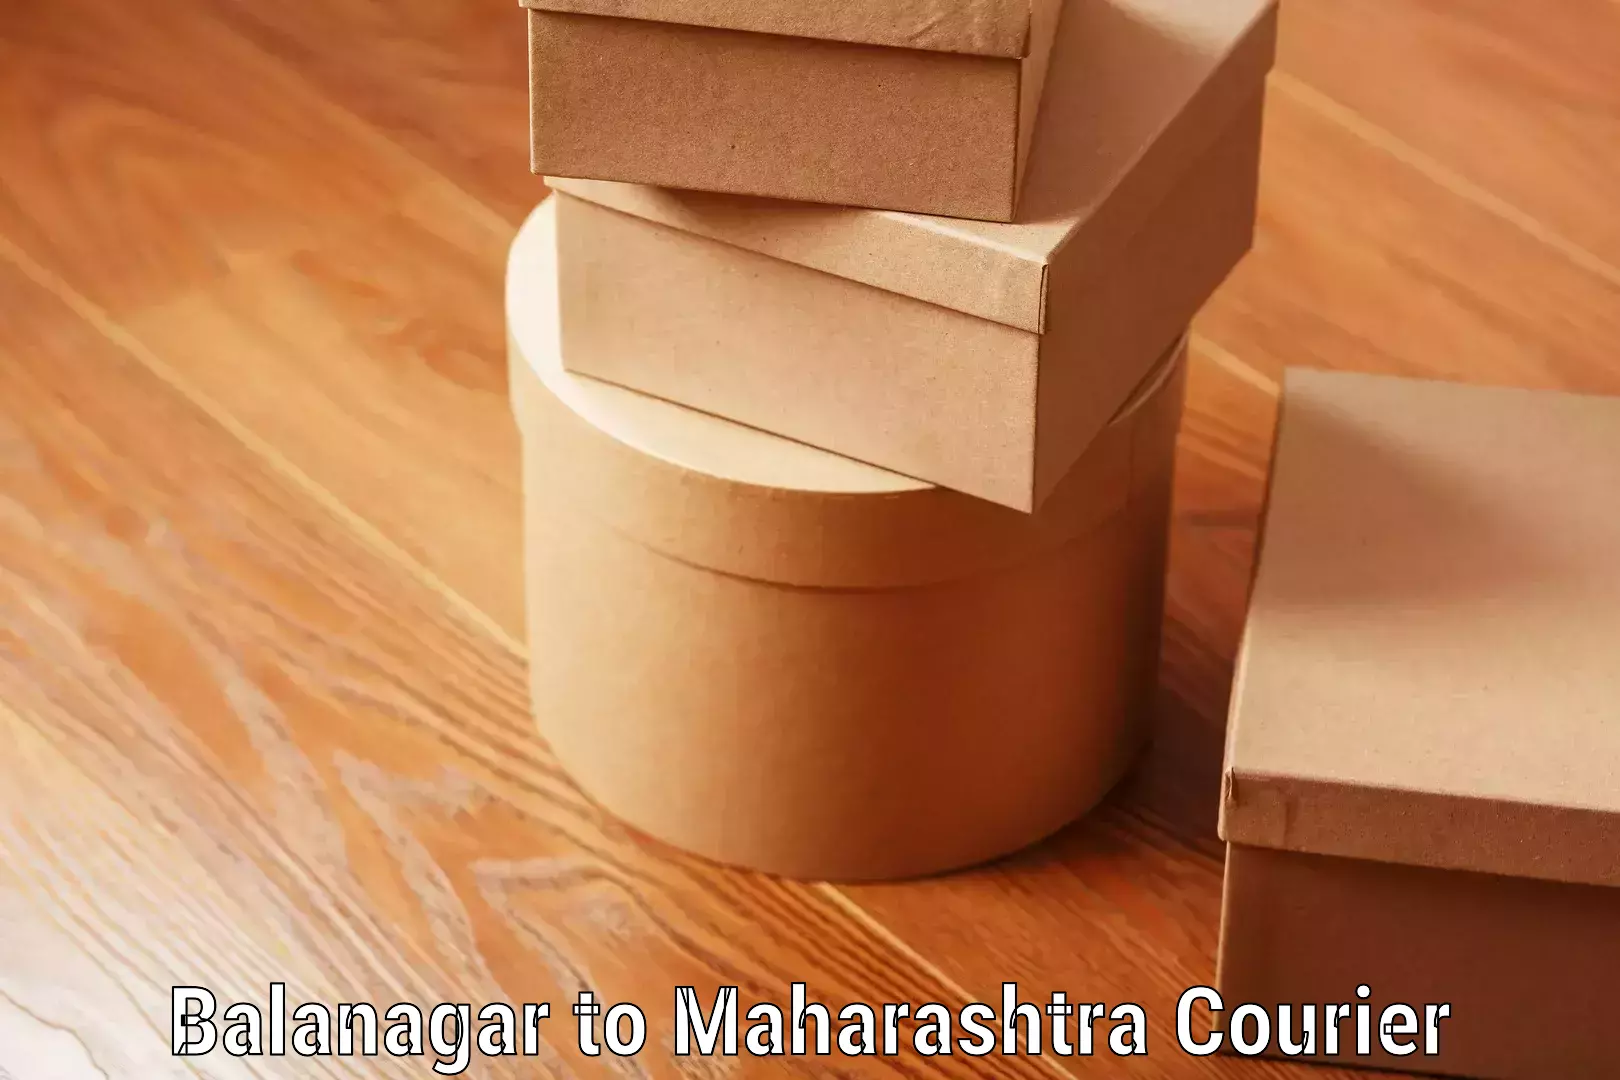 Luggage delivery estimate Balanagar to Shindkheda